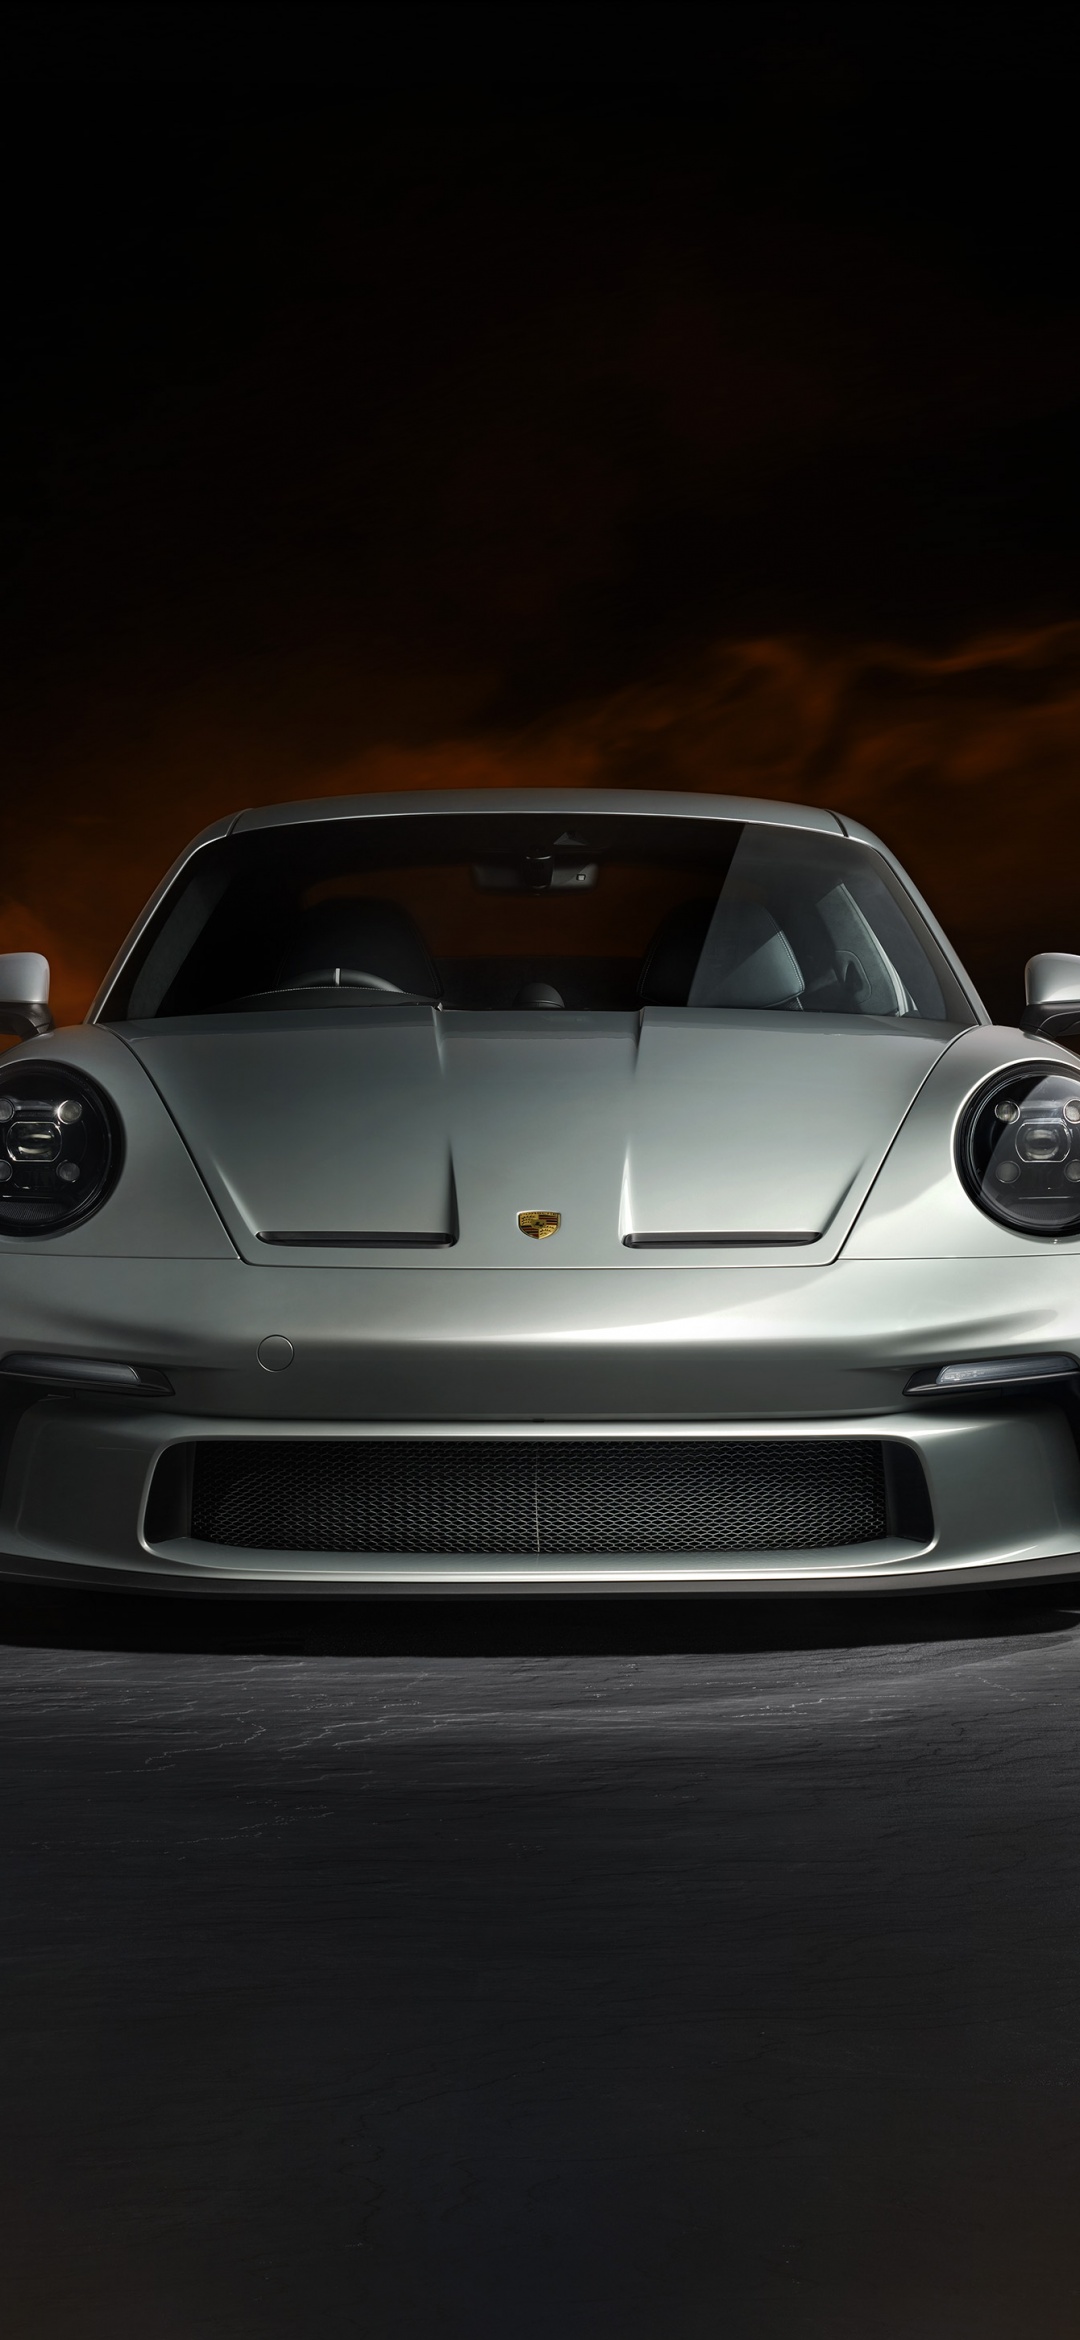 Xe Porsche 911 GT3 - Một chiếc xe thể thao sang trọng với kiểu dáng cứng cáp và khỏe khoắn, đầy sức mạnh để đưa bạn tới đích với cảm giác hưng phấn và tuyệt vời. Hãy xem hình ảnh để chiêm ngưỡng vẻ đẹp hoàn hảo của chiếc xe này.